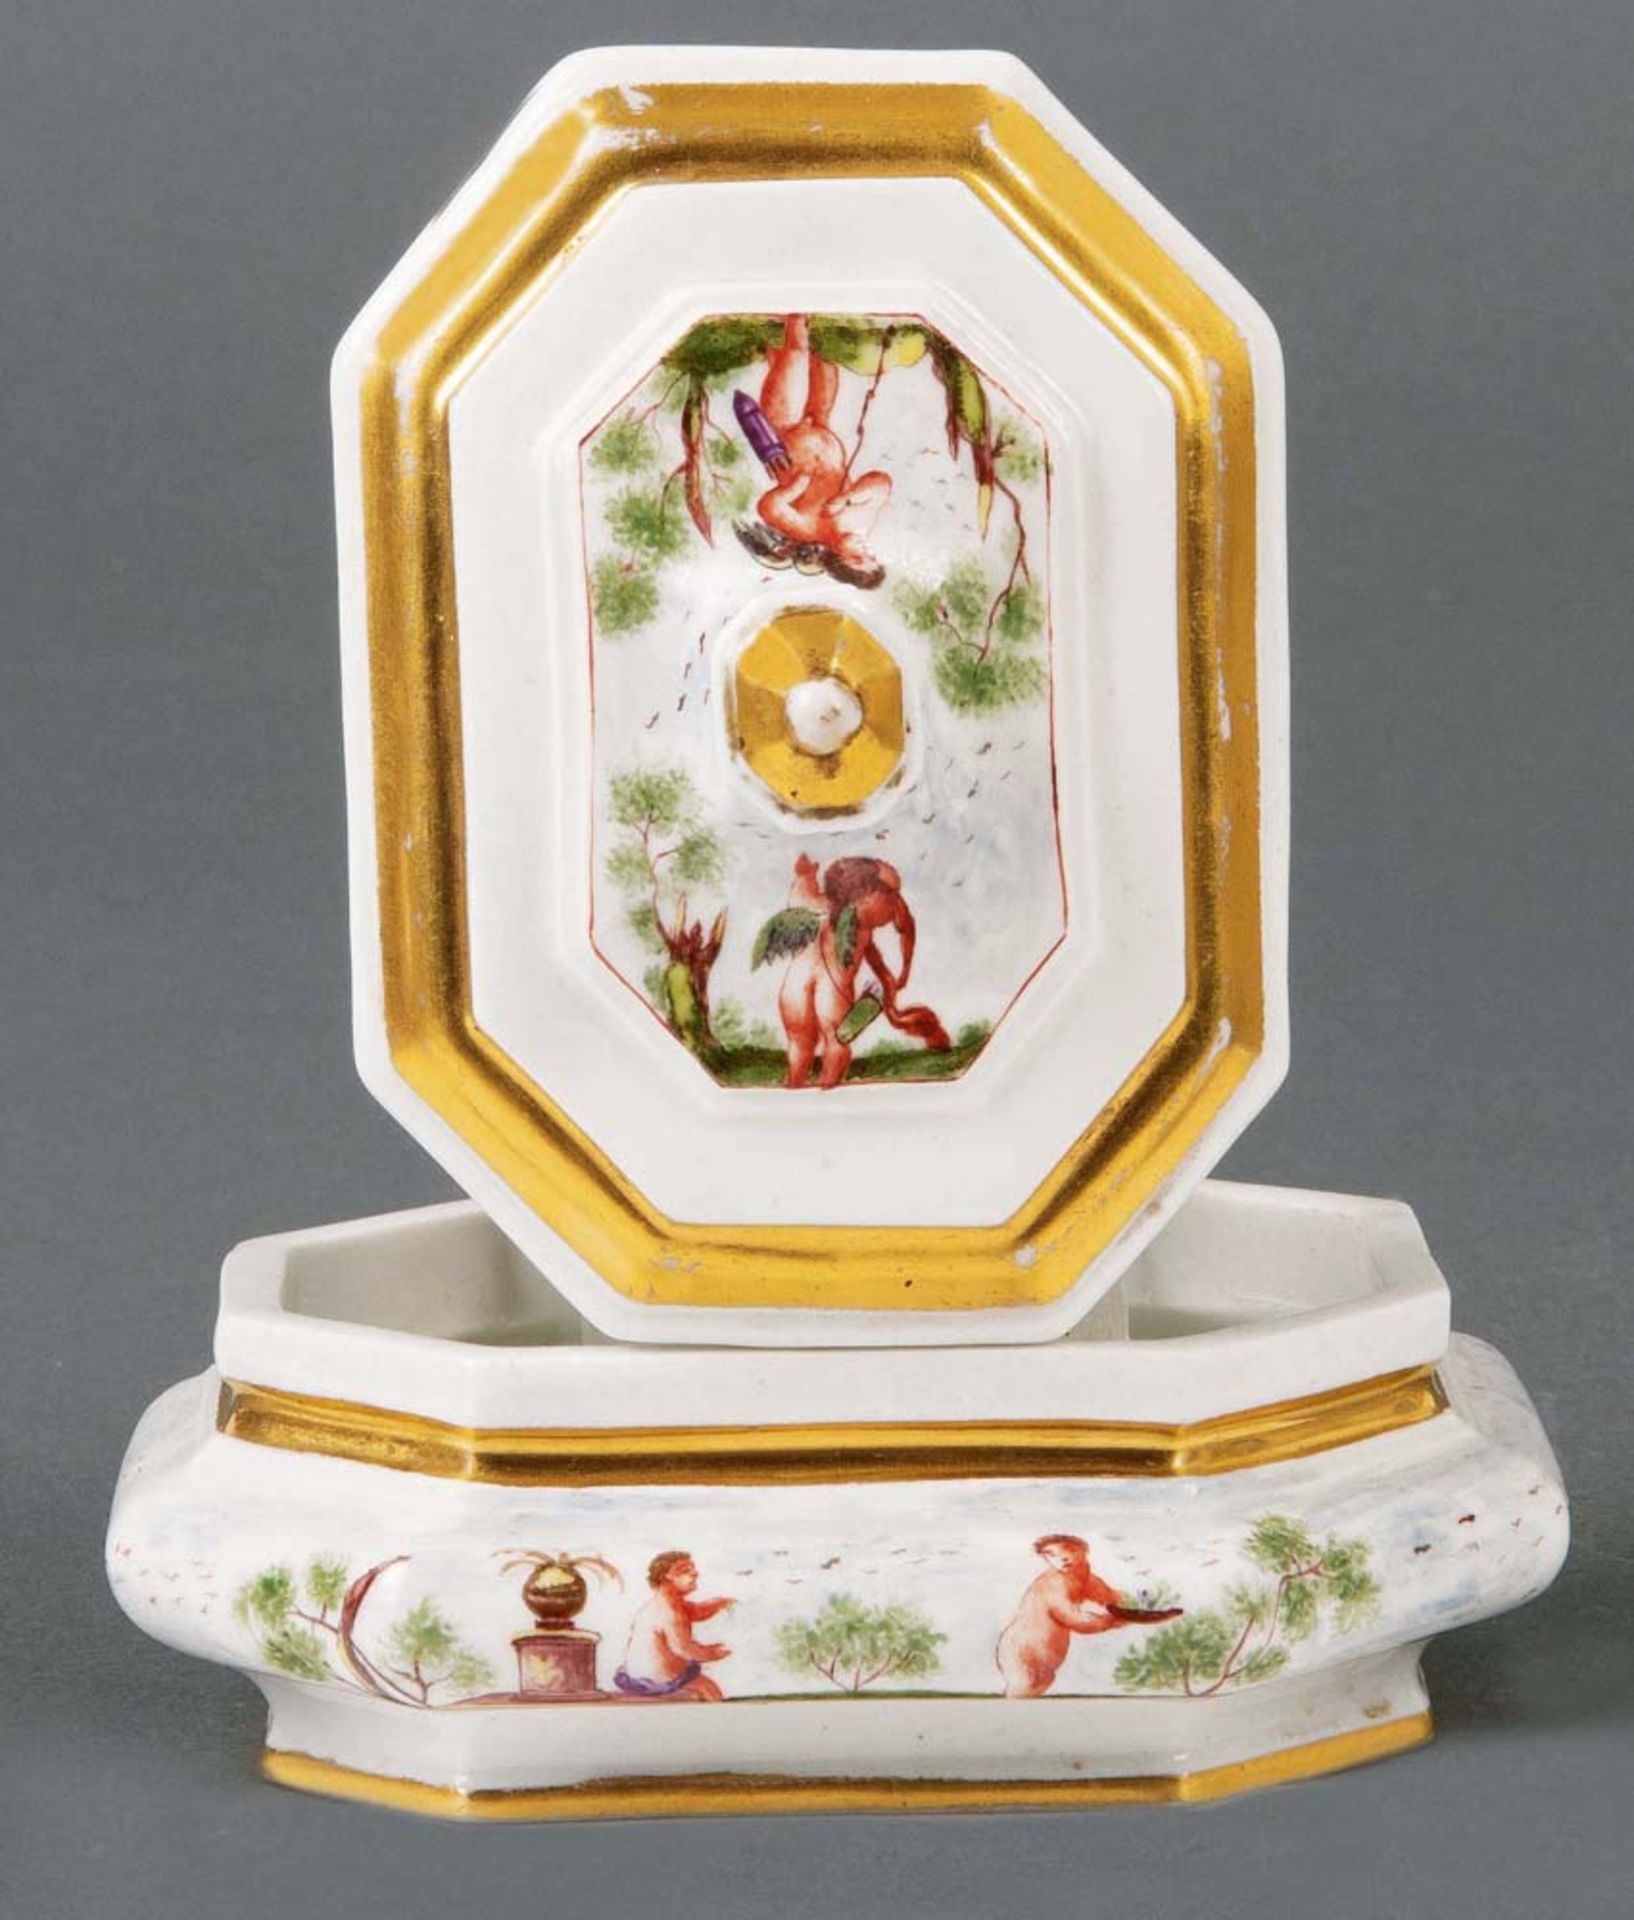 Zuckerdose Meissen 1725-26 Oktogonal, in gebauchter Form, mit eingezogenem Standring und Lippenrand. - Bild 2 aus 2